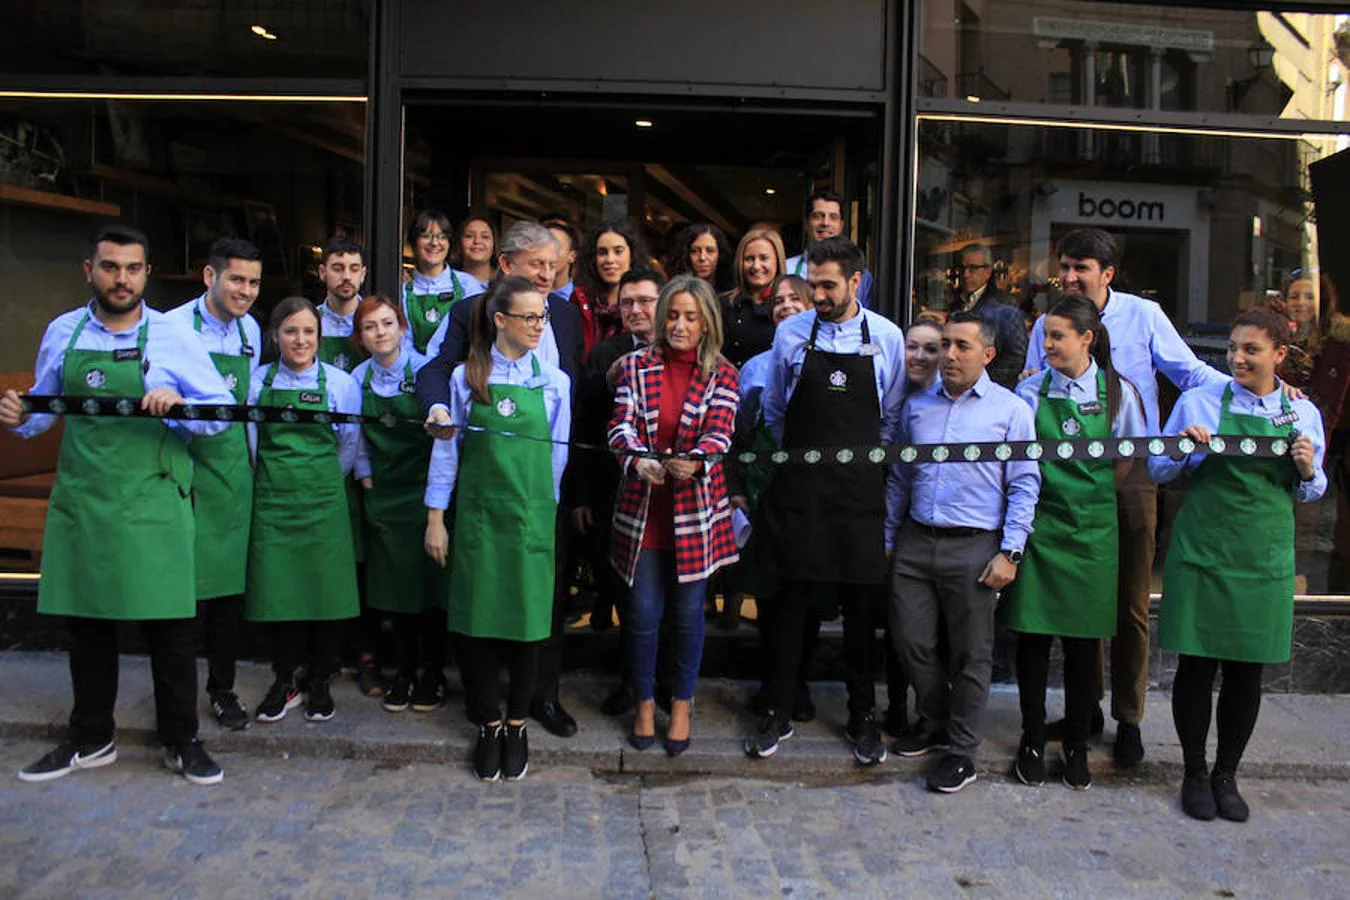 La inauguración de la cafetería Starbucks, en imágenes